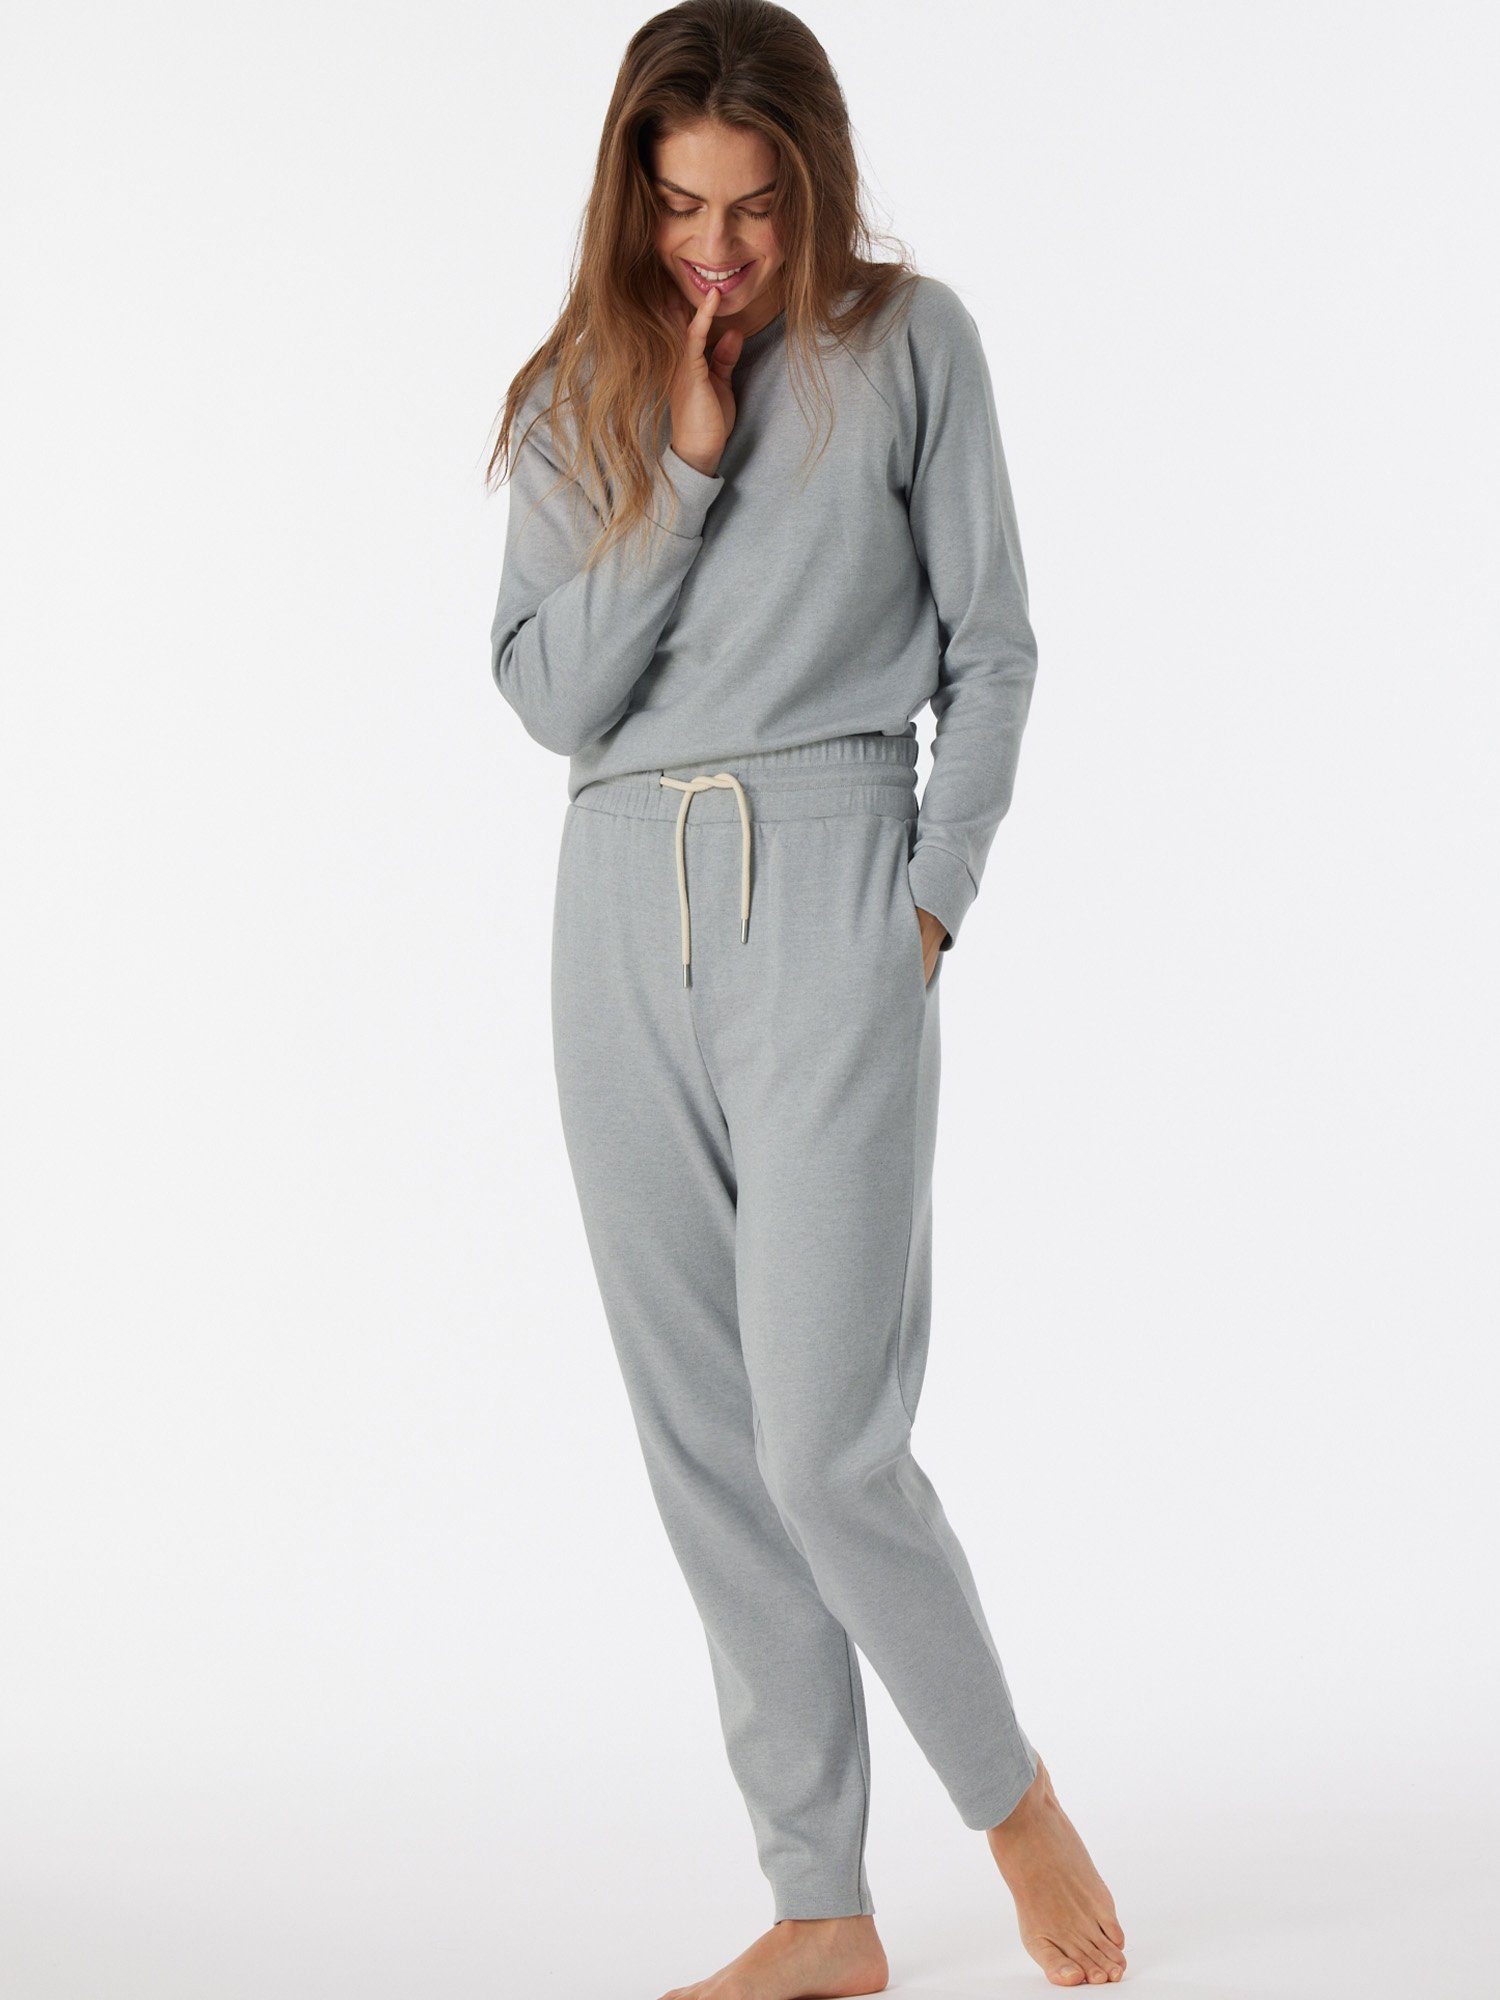 Schiesser Pyjamahose schlaf-hose schlaf-hose pyjama grau-mel. Relax & Mix